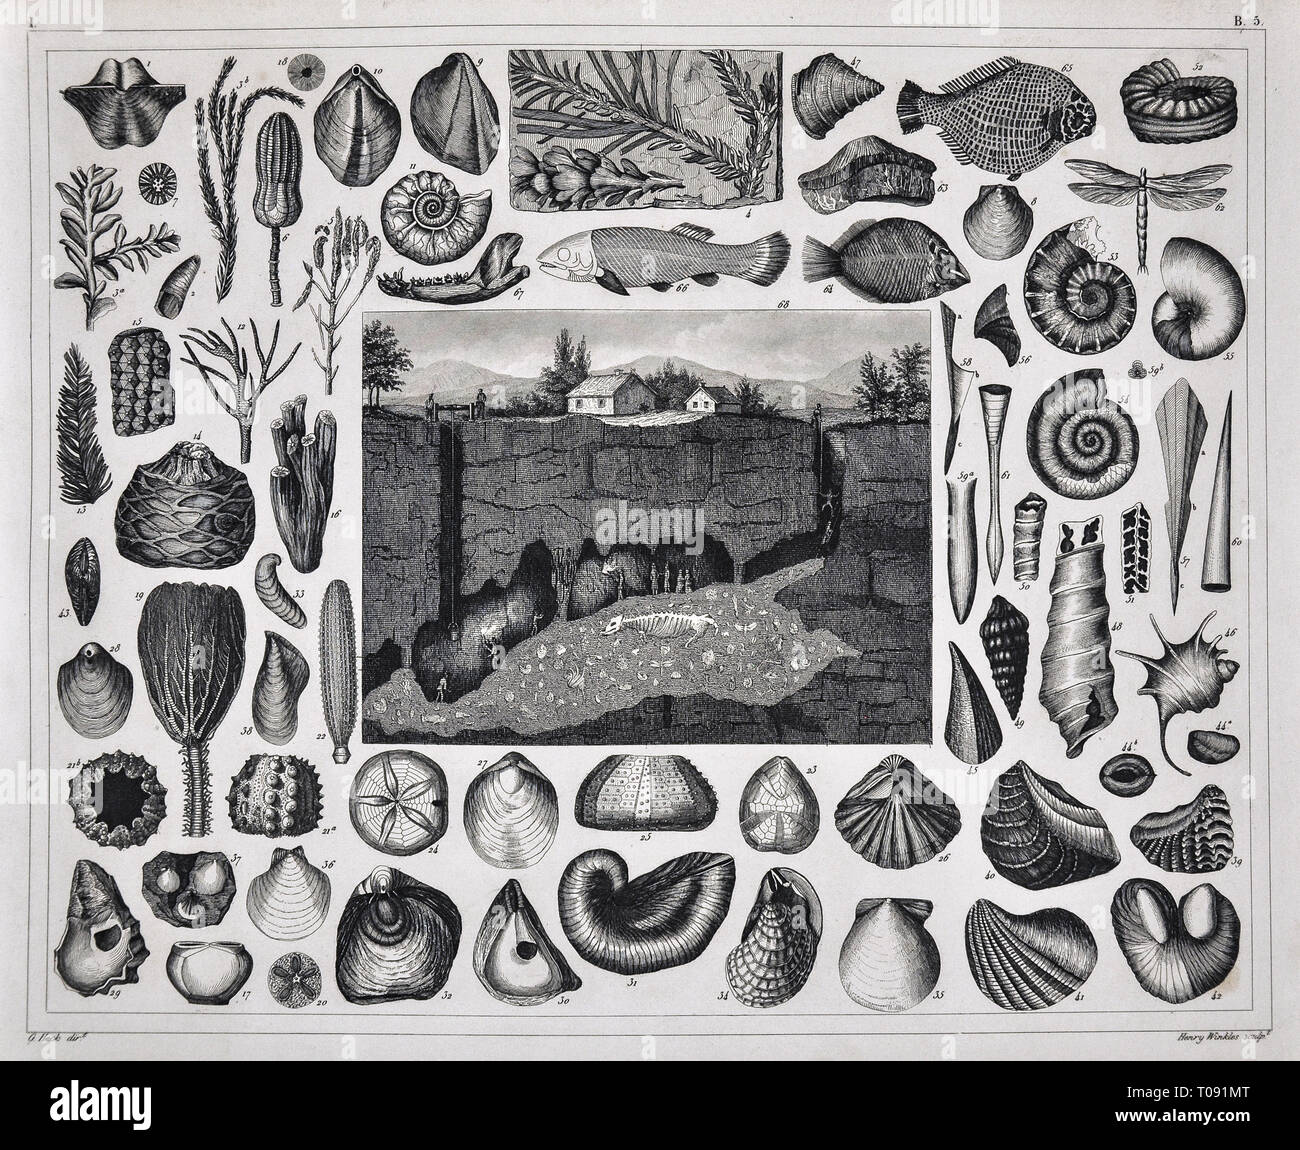 Les photos 1849 Imprimer - Atlas des fossiles préhistoriques de divers coquillages du Précambrien, poissons, coraux et une vue d'une grotte fossile Banque D'Images